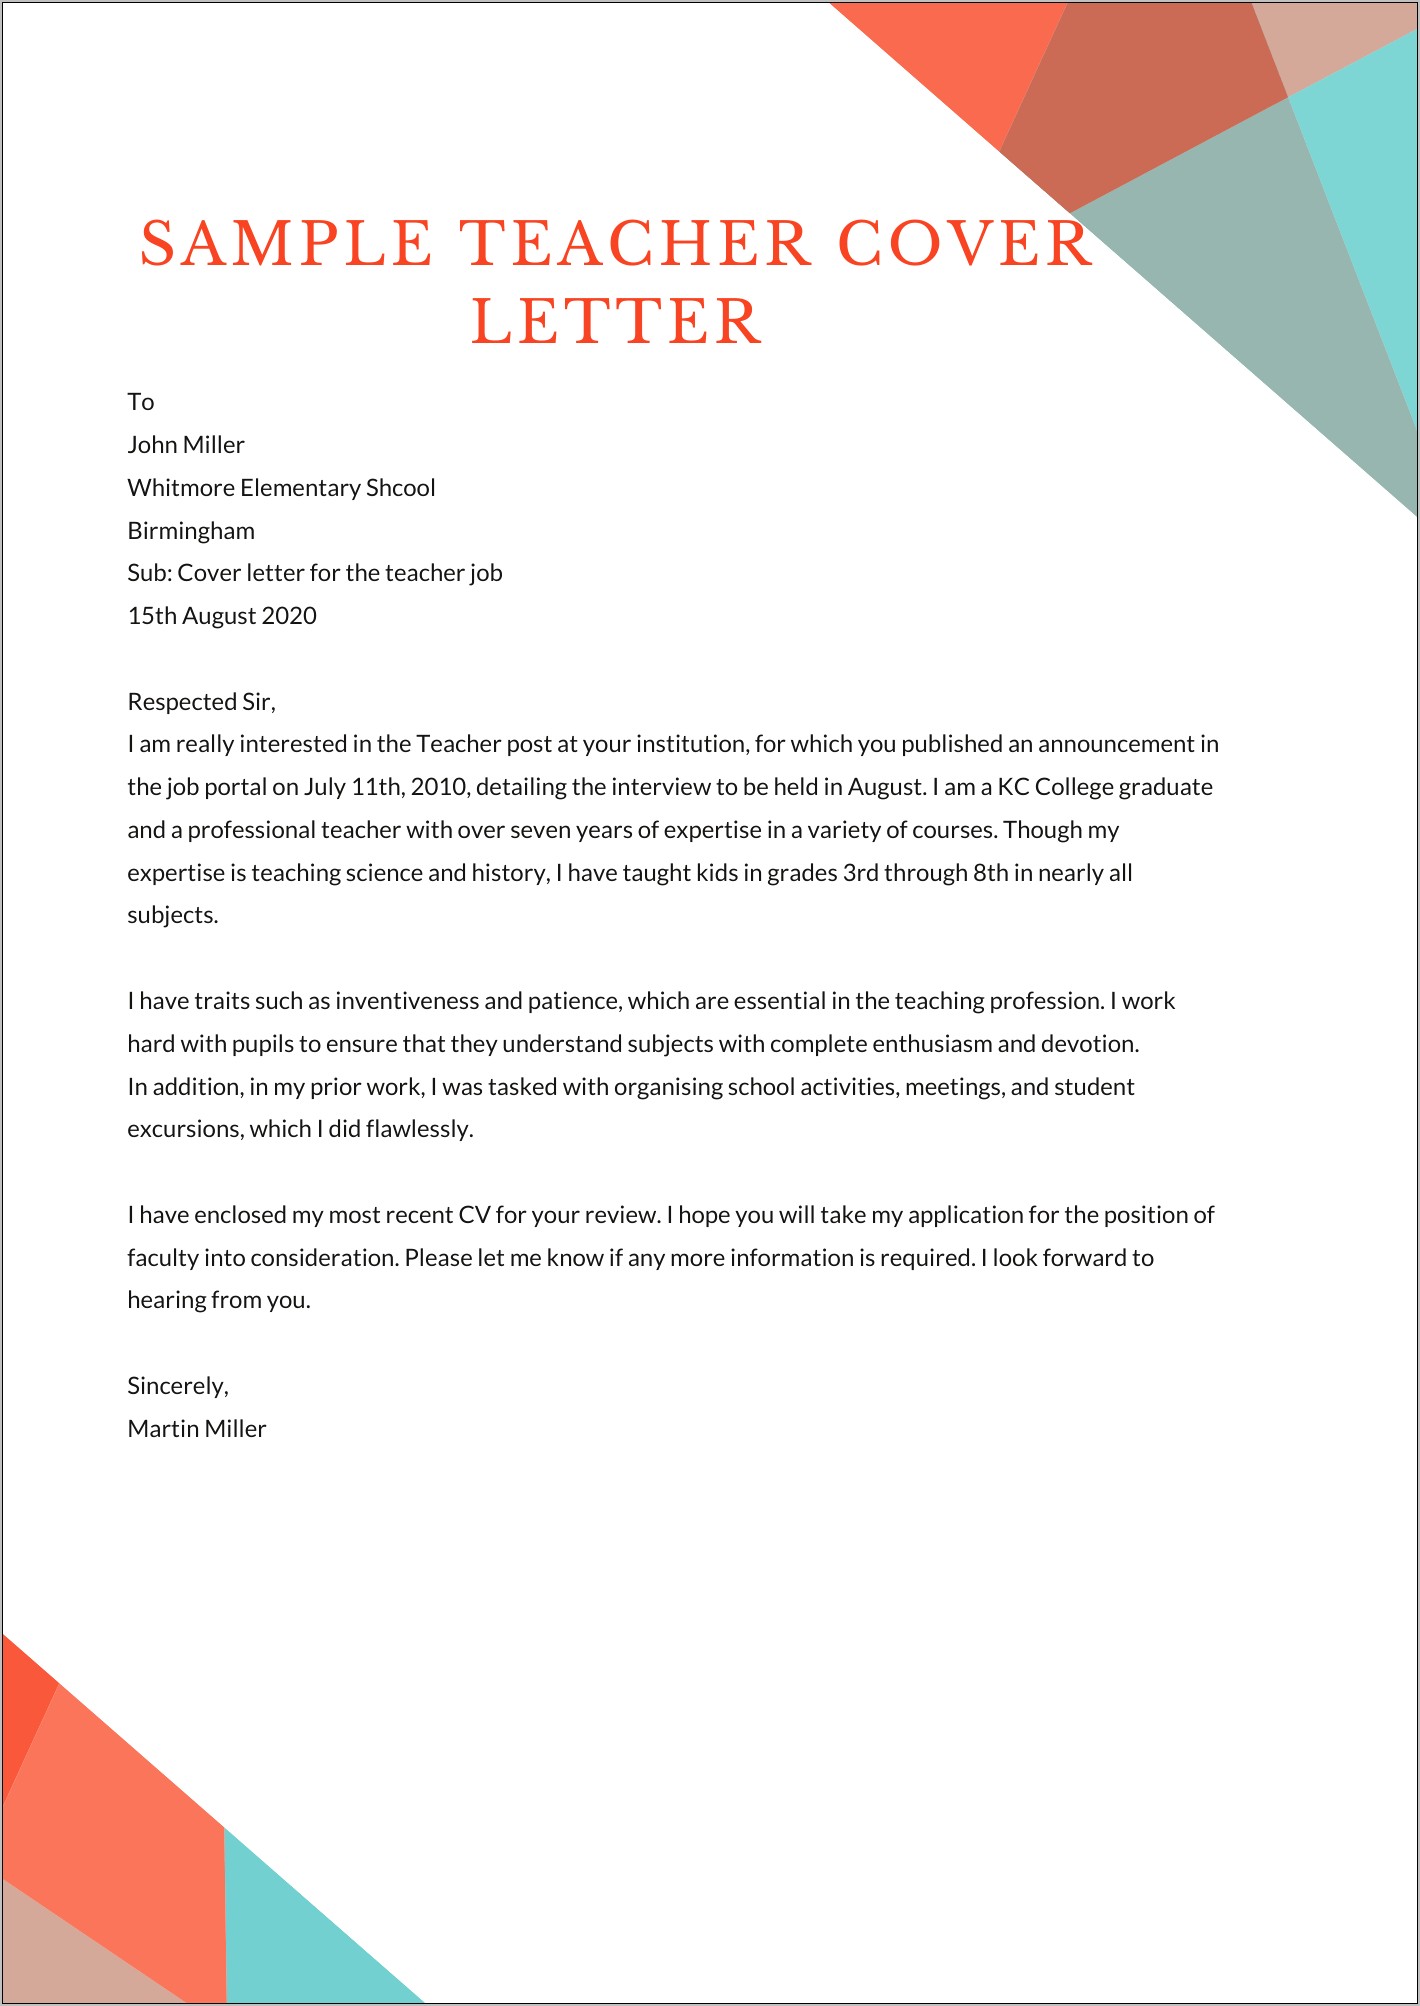 Resume Cover Letter For Elementary Teaching Positioin